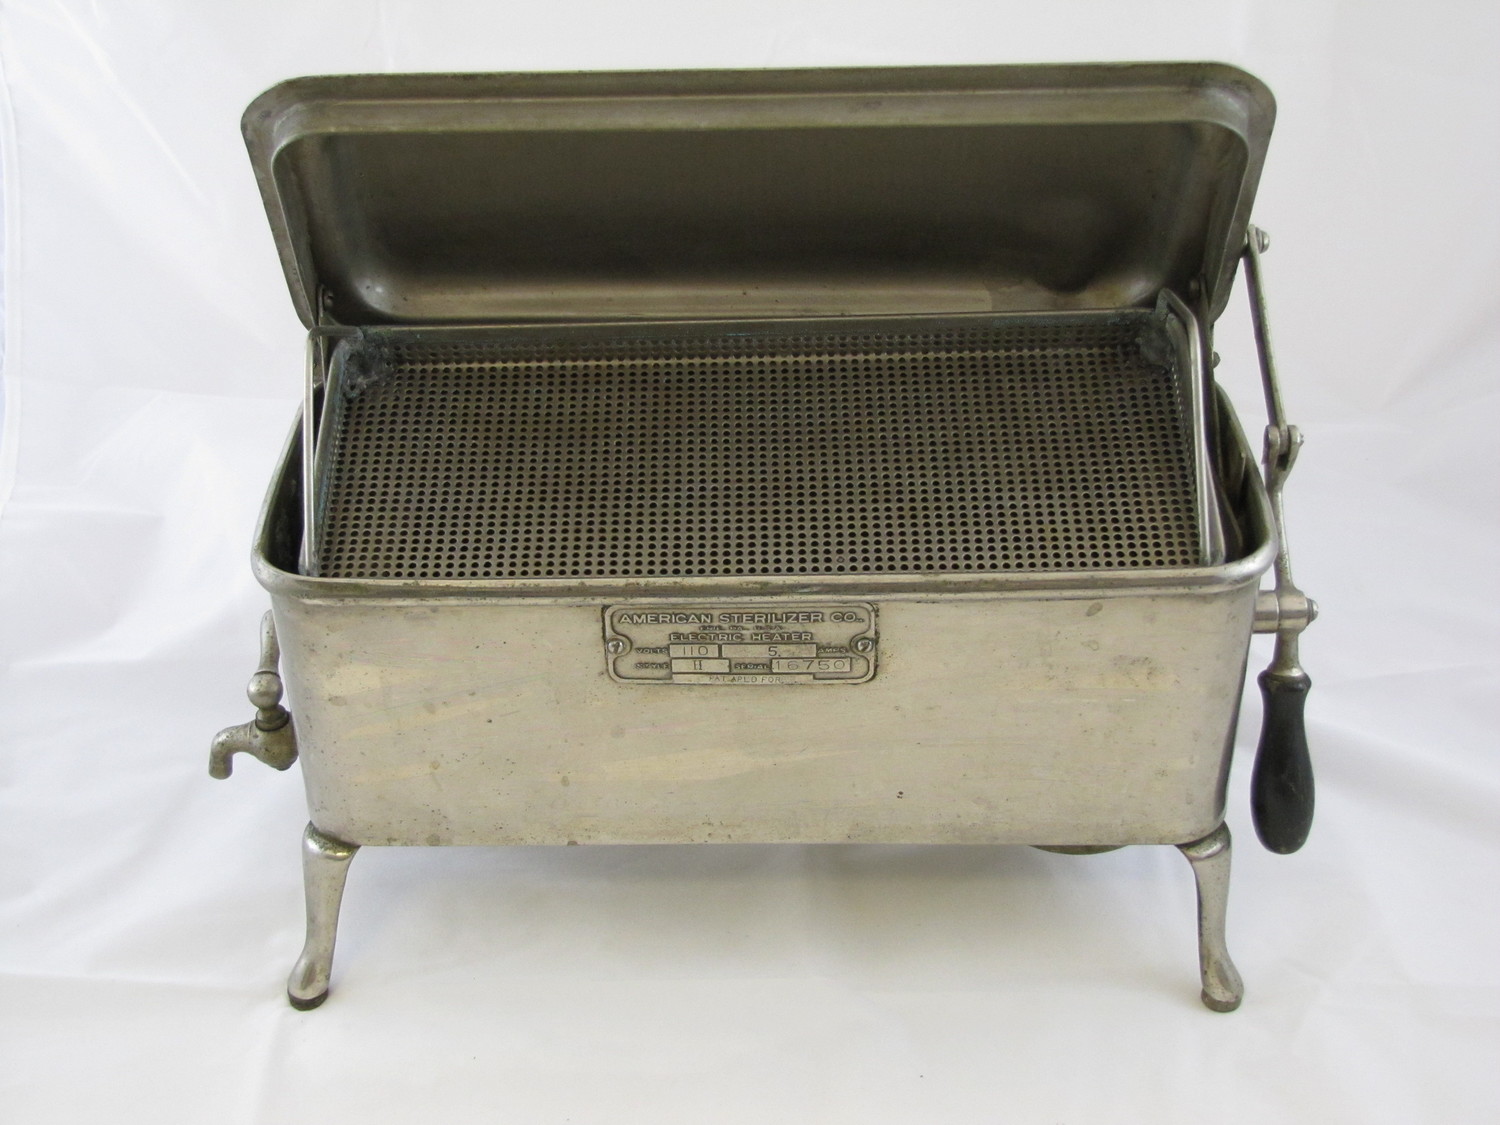 1930s silver sterilizer